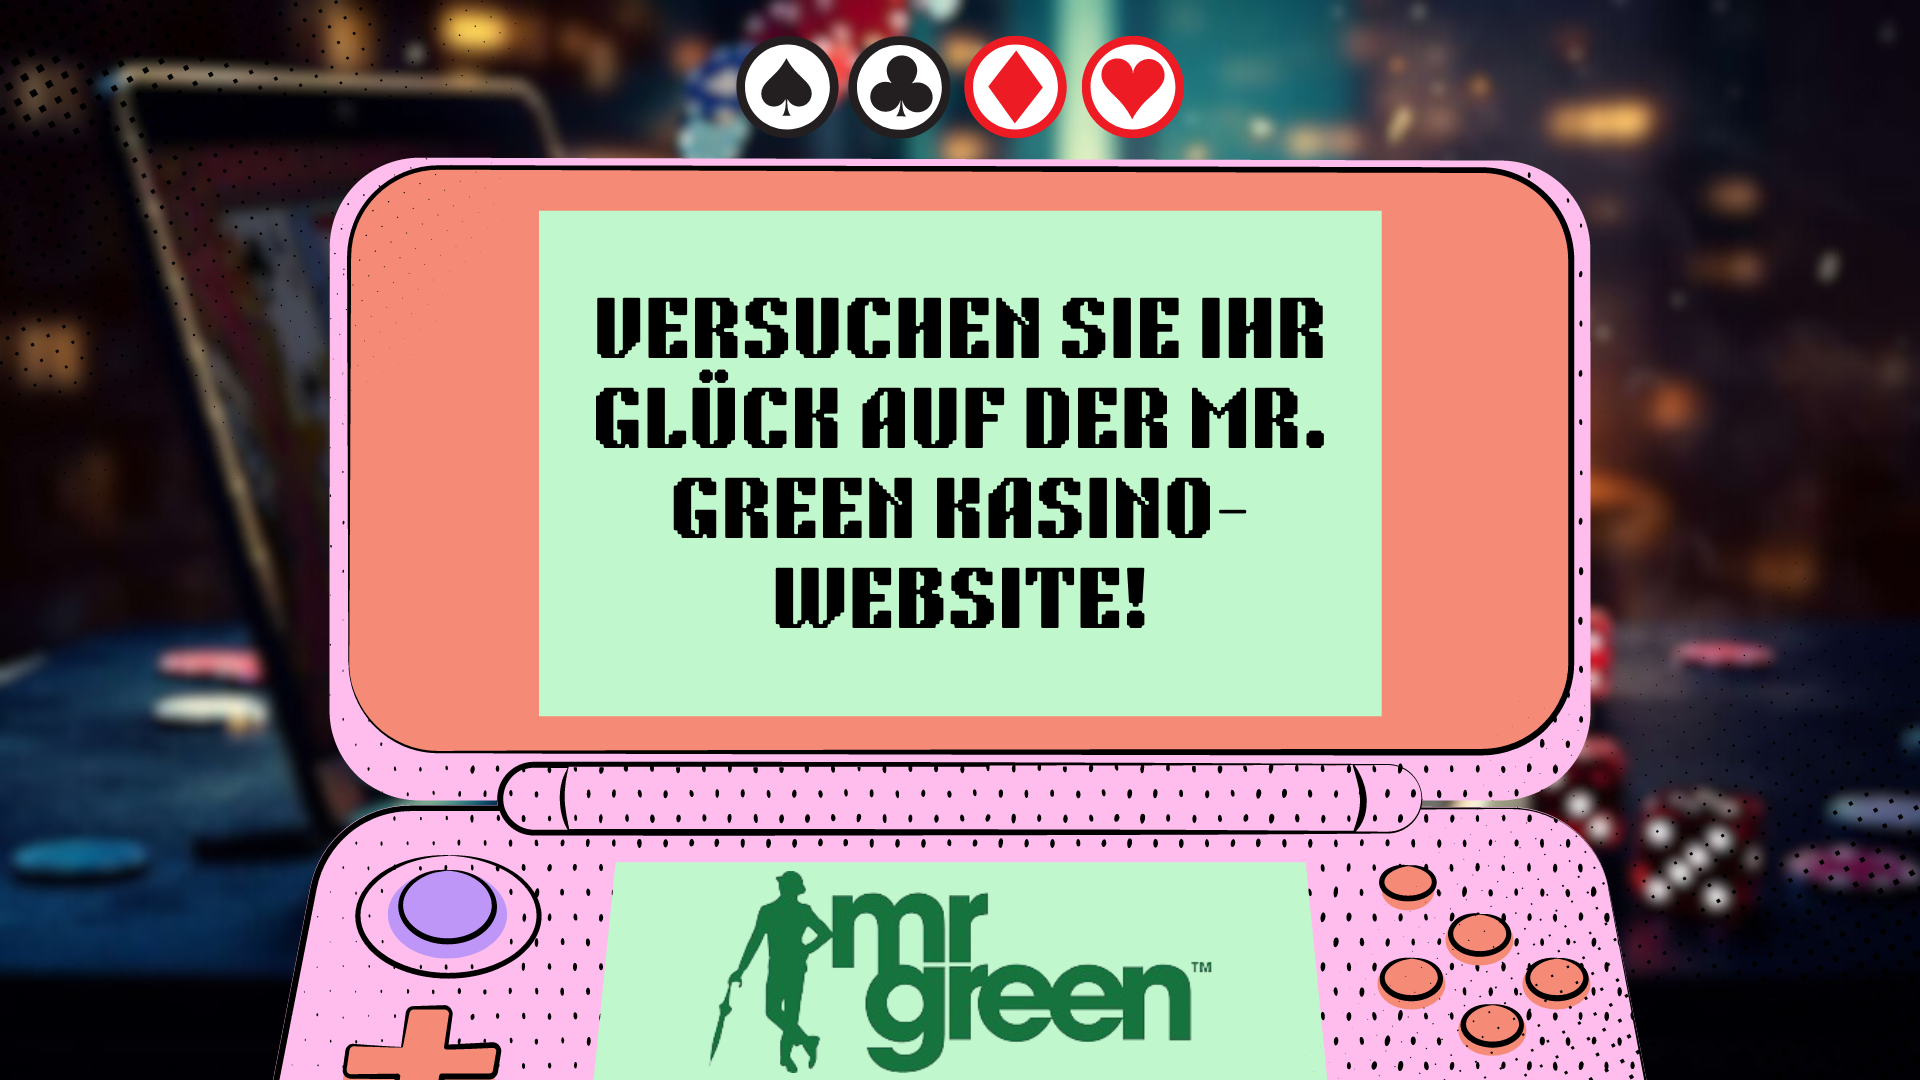 Versuchen Sie Ihr Glück auf der Mr. Green kasino-website!